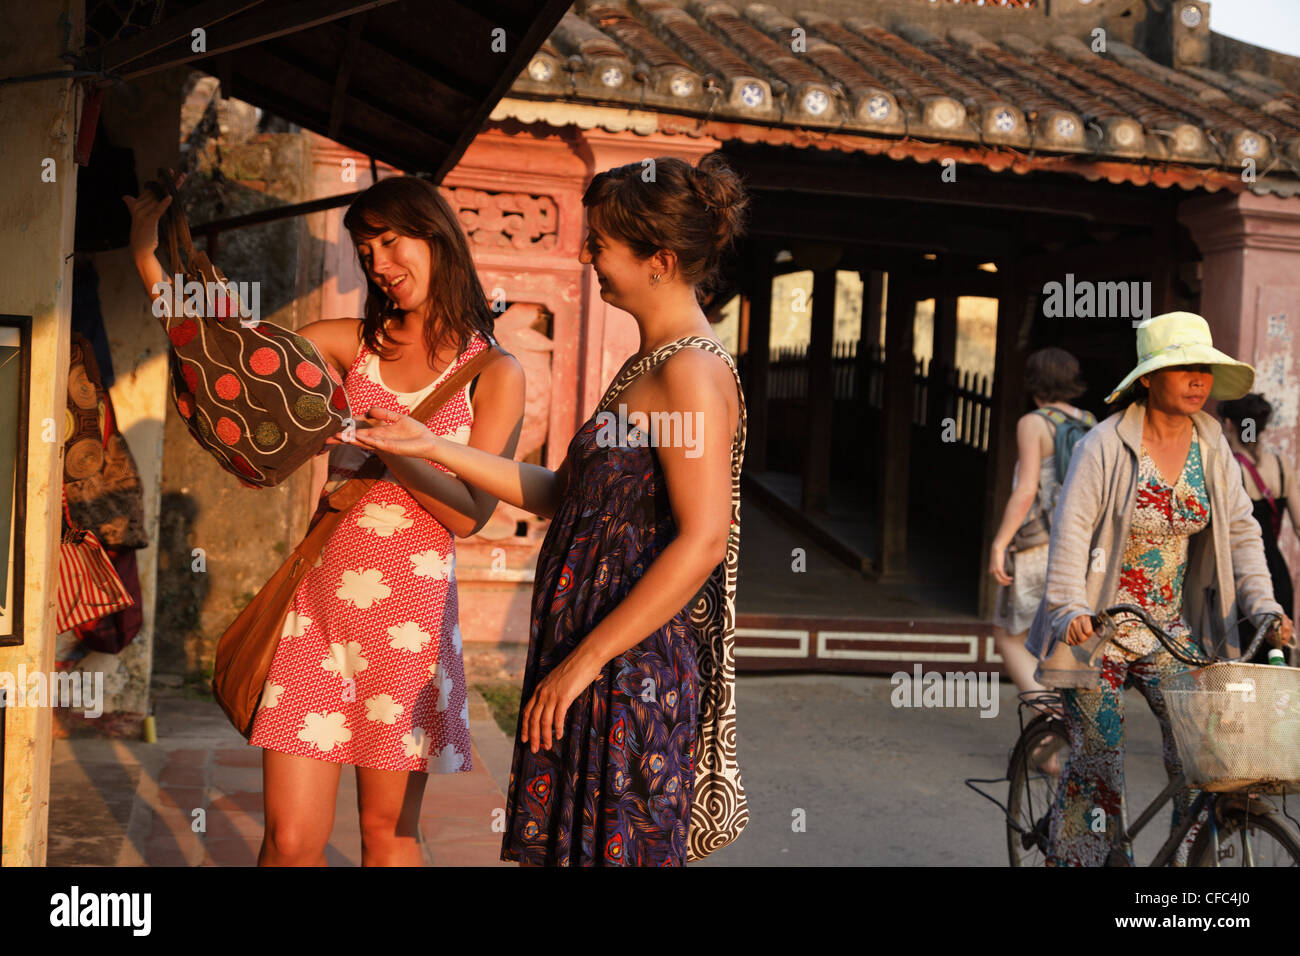 Two women shopping, Chua Cau, Japanese Bridge, Hoi An, Annam, Vietnam Stock Photo